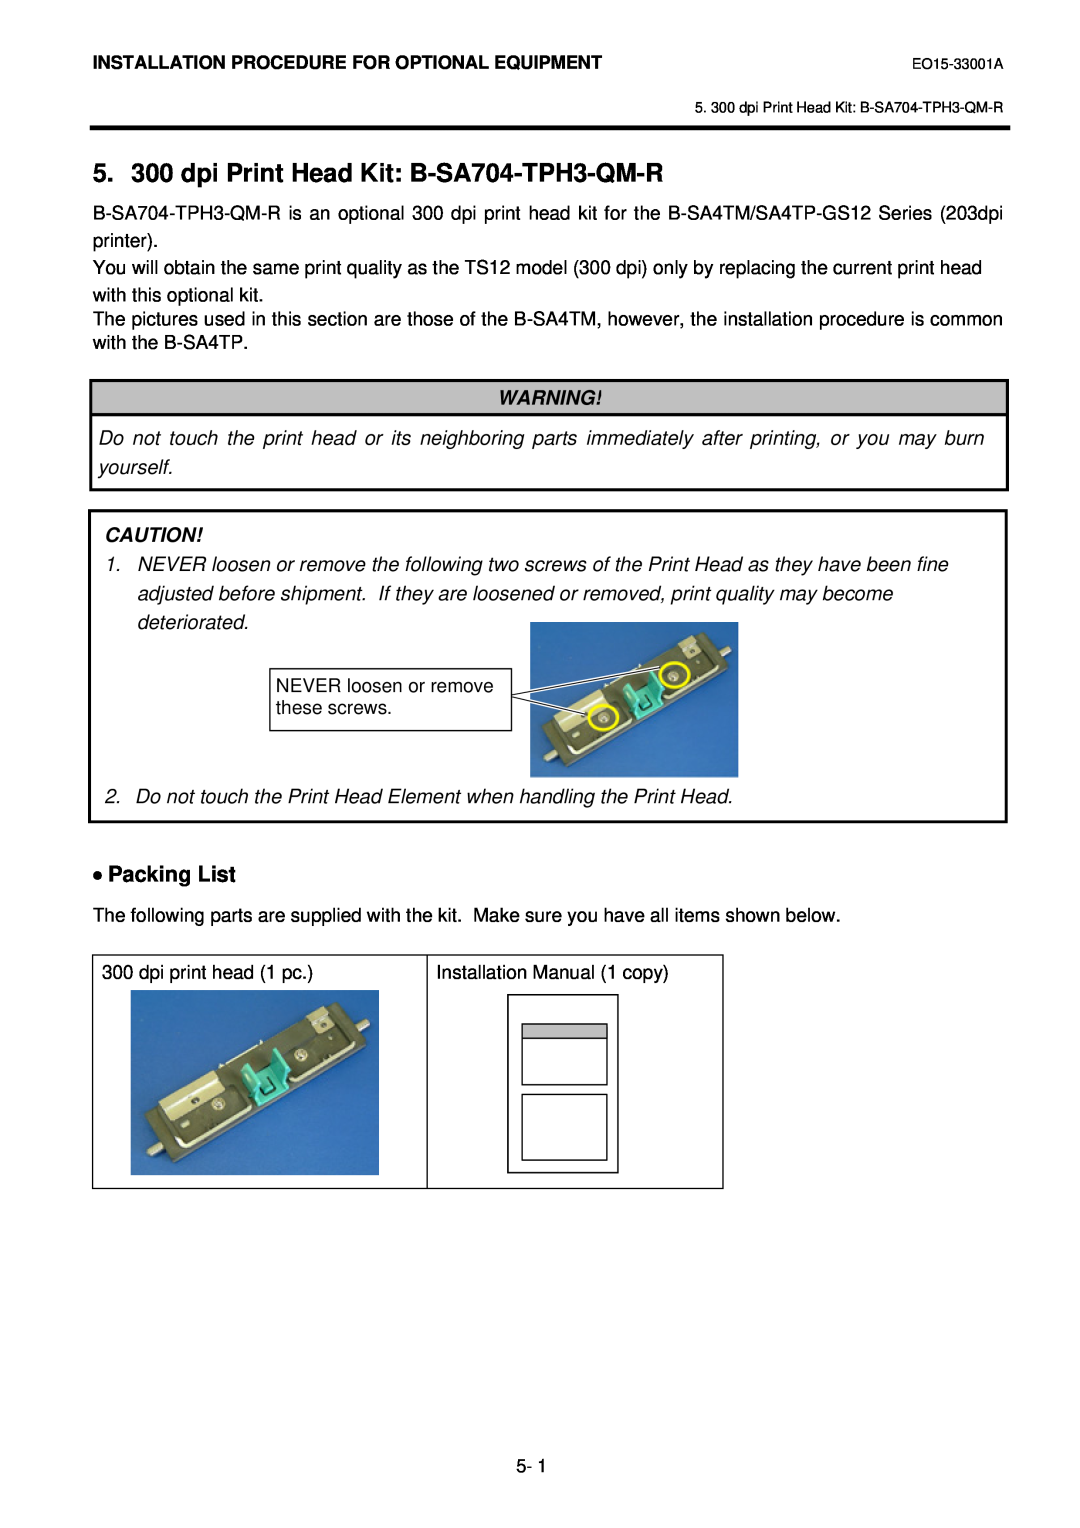 Toshiba B-SA4T installation manual 5. 300 dpi Print Head Kit B-SA704-TPH3-QM-R, Packing List 